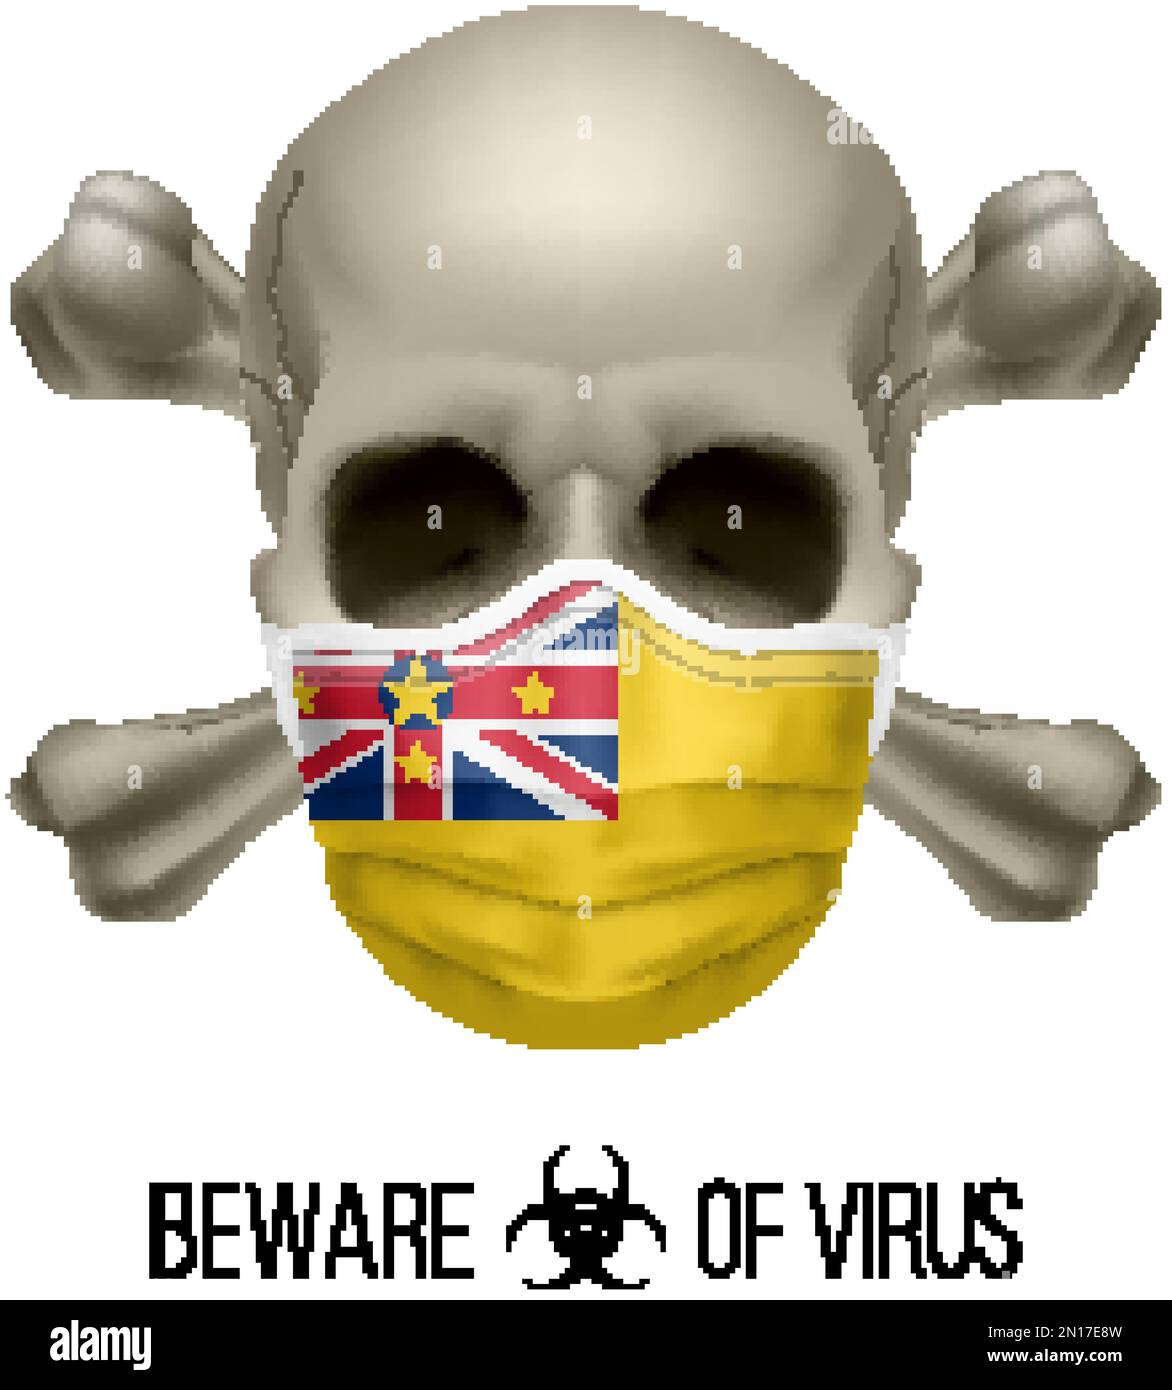 Menschlicher Schädel mit Kreuz und Operationsmaske in der Farbe der Nationalflagge Niue. Maske in Form der Niuen-Fahne und Schädel als Konzept der Dirre Warning Stock Vektor